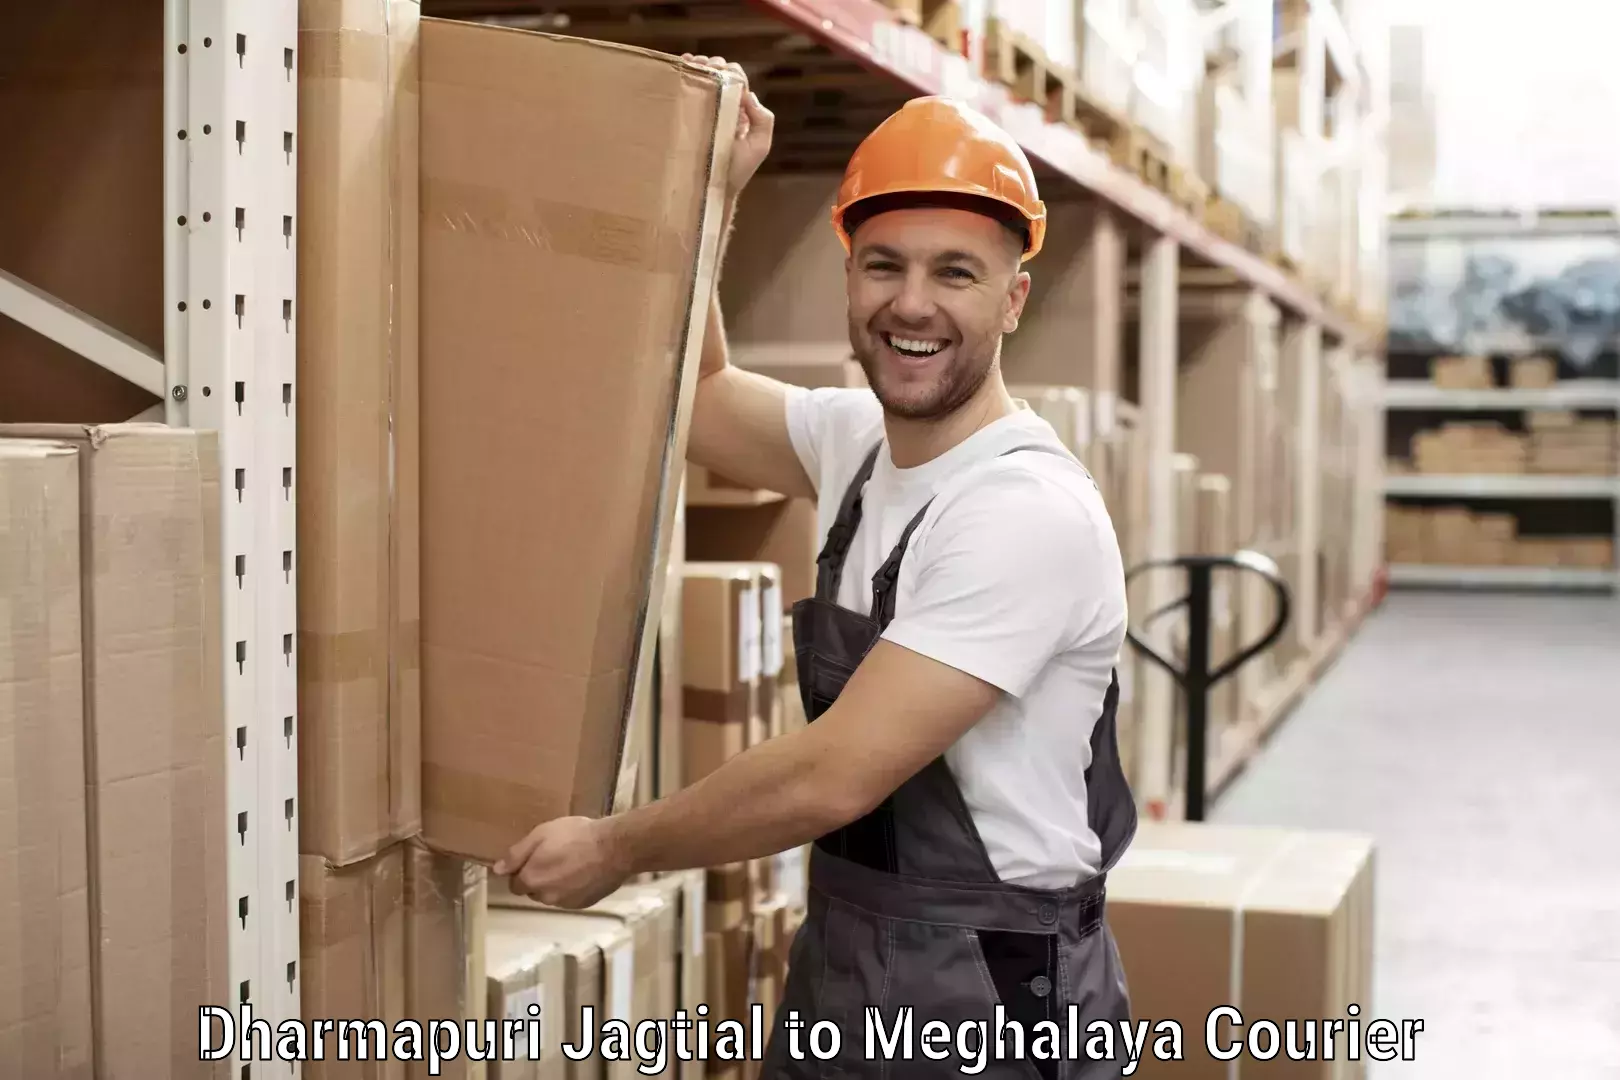 Multi-city courier Dharmapuri Jagtial to NIT Meghalaya